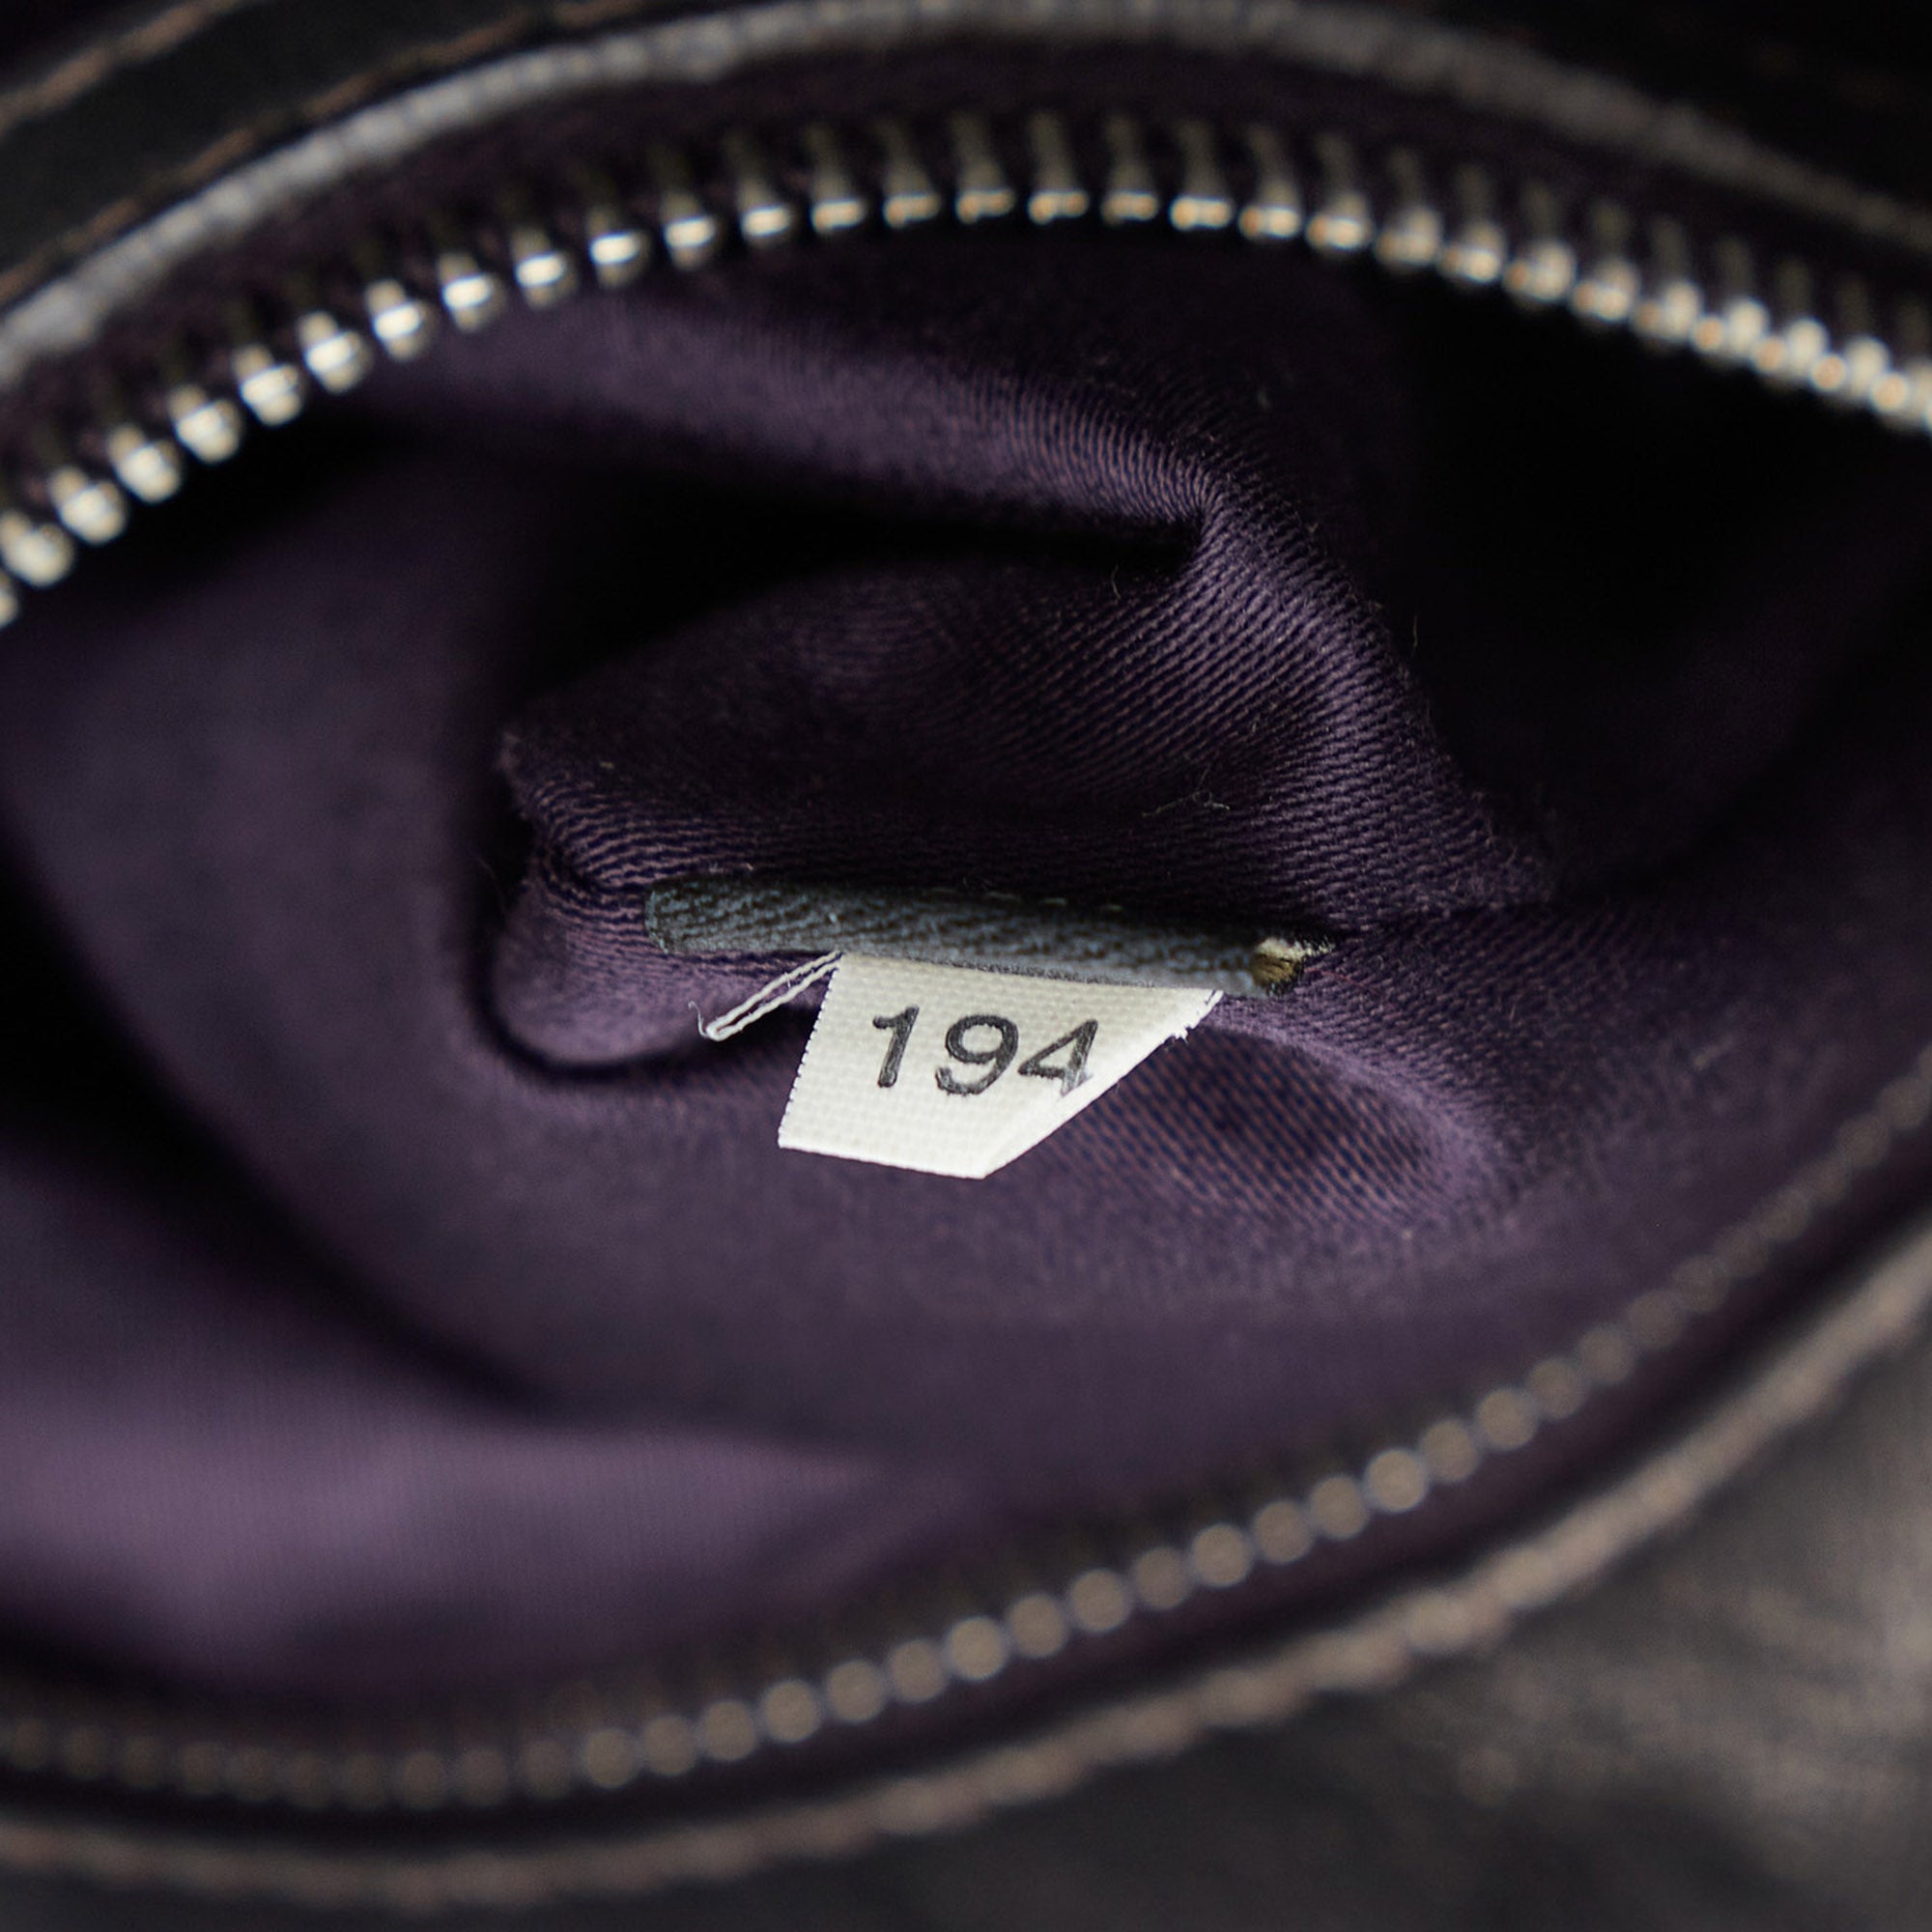 Miu Miu Grey Matelasse Leather Coffer Two Way Top Handle Bag